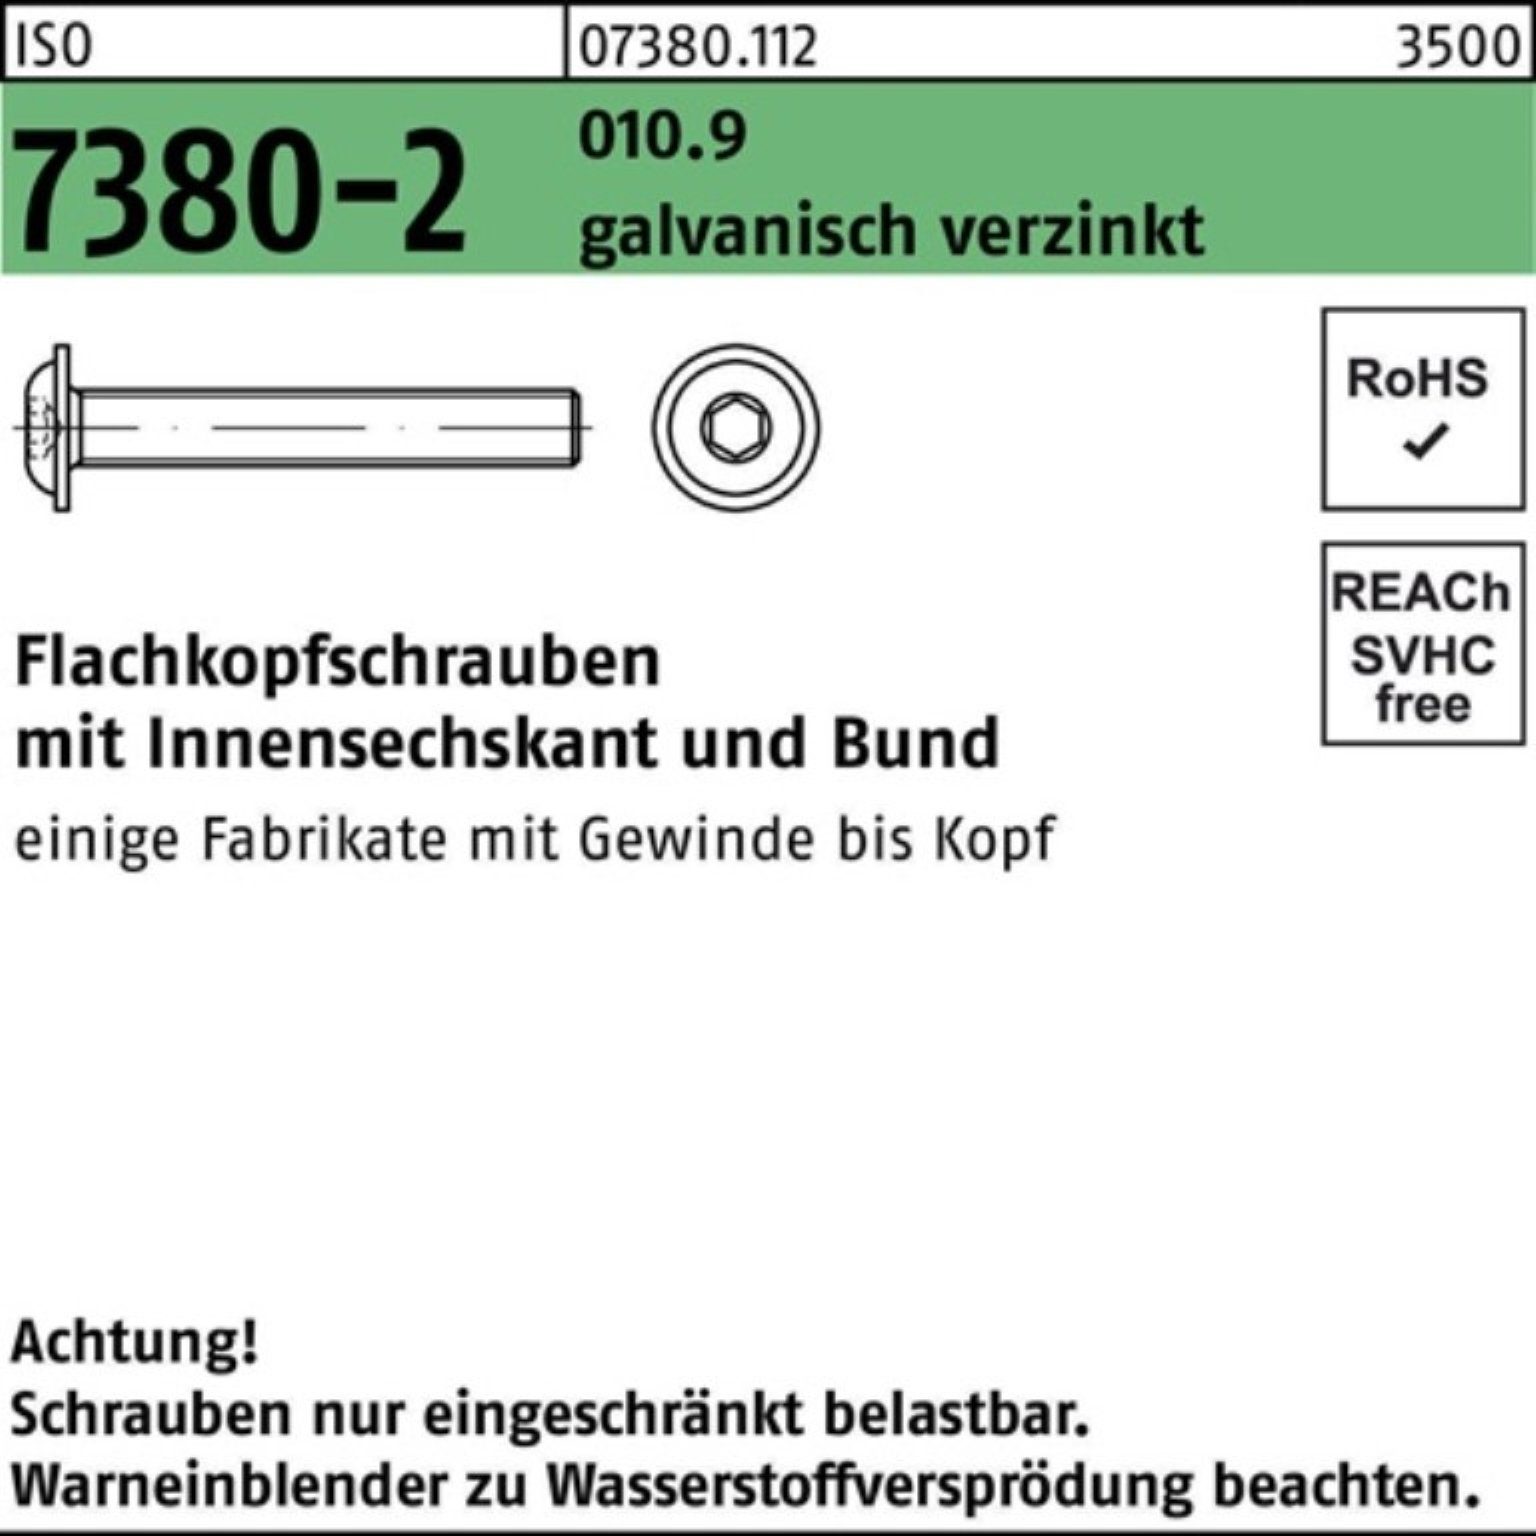 Reyher Schraube Bund/Innen-6kt gal 500er 010.9 Pack Flachkopfschraube M6x16 7380-2 ISO